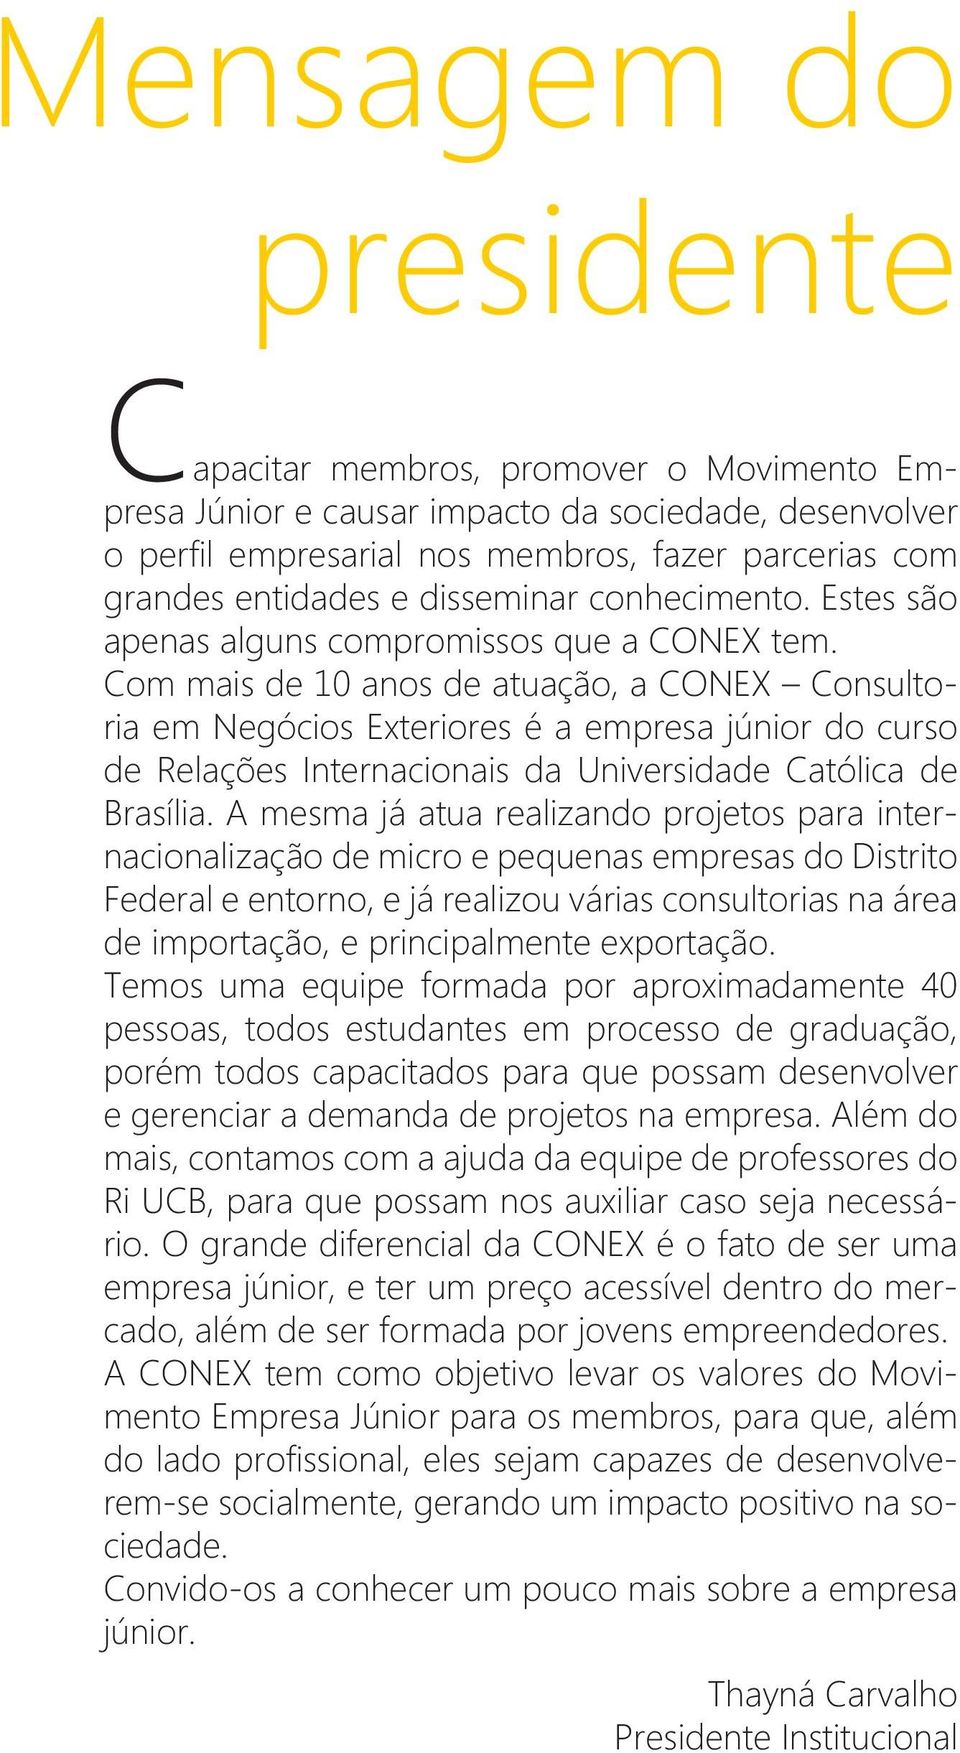 Com mais de 10 anos de atuação, a CONEX Consultoria em Negócios Exteriores é a empresa júnior do curso de Relações Internacionais da Universidade Católica de Brasília.